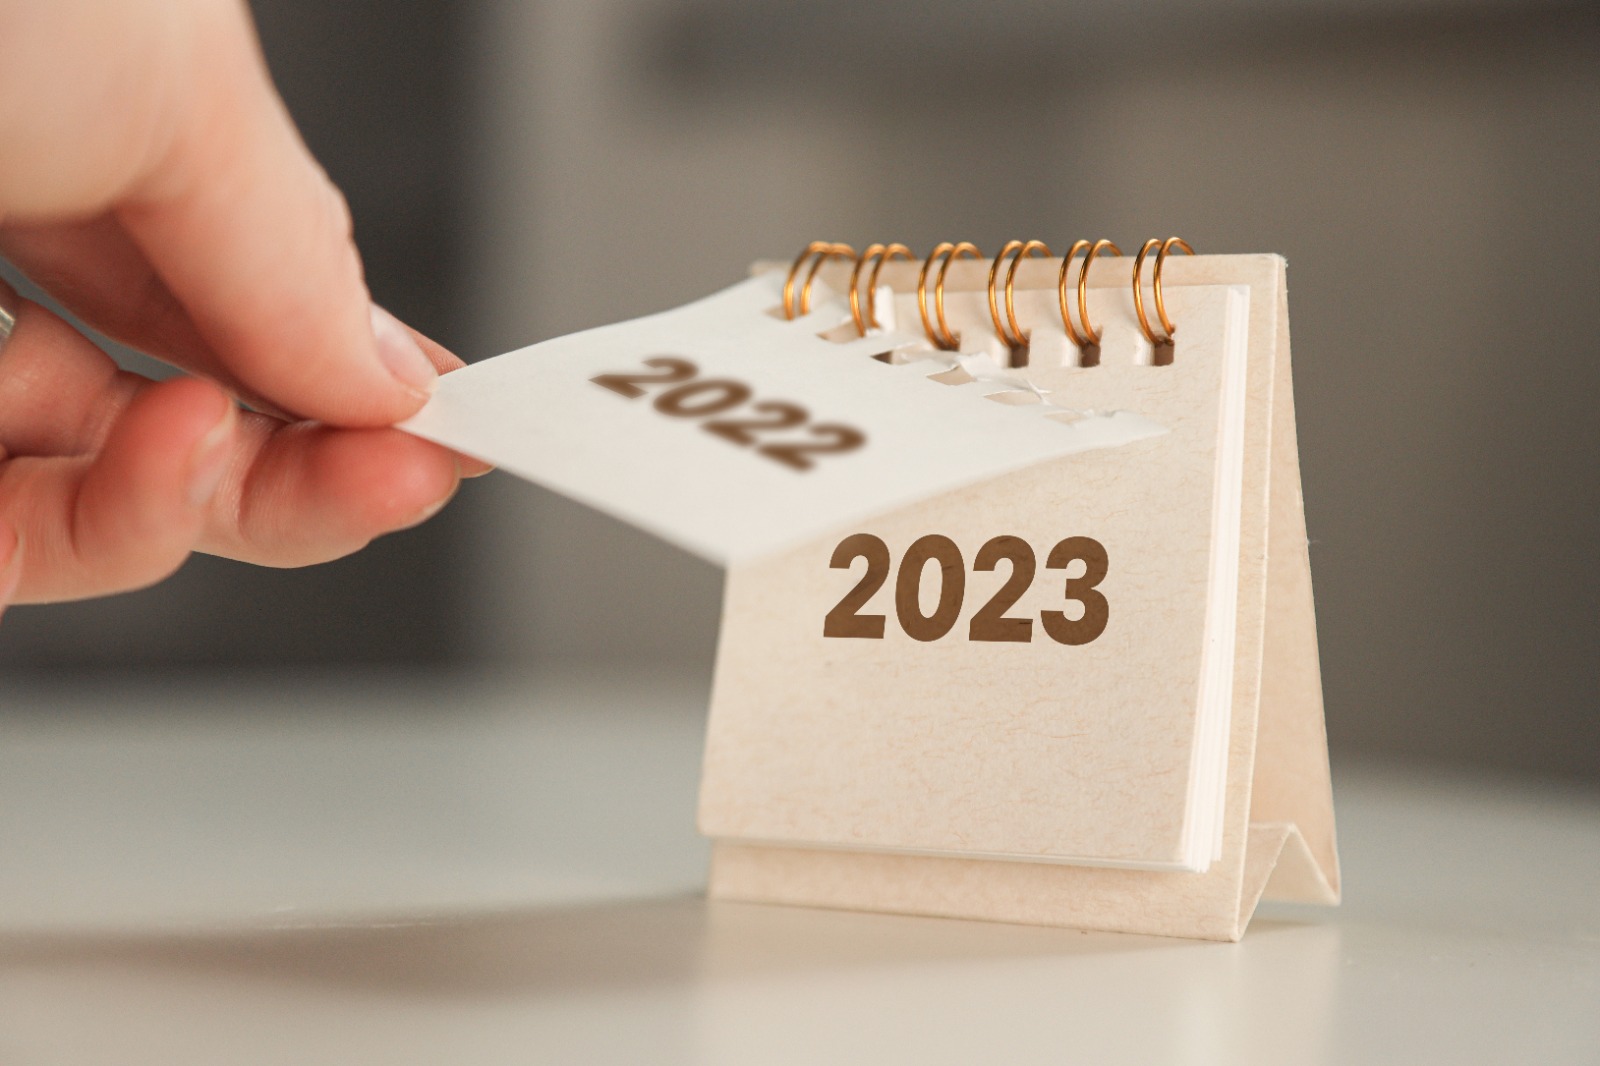 Calendário da Saúde 2023: Prepare-se para as datas comemorativas deste ano!